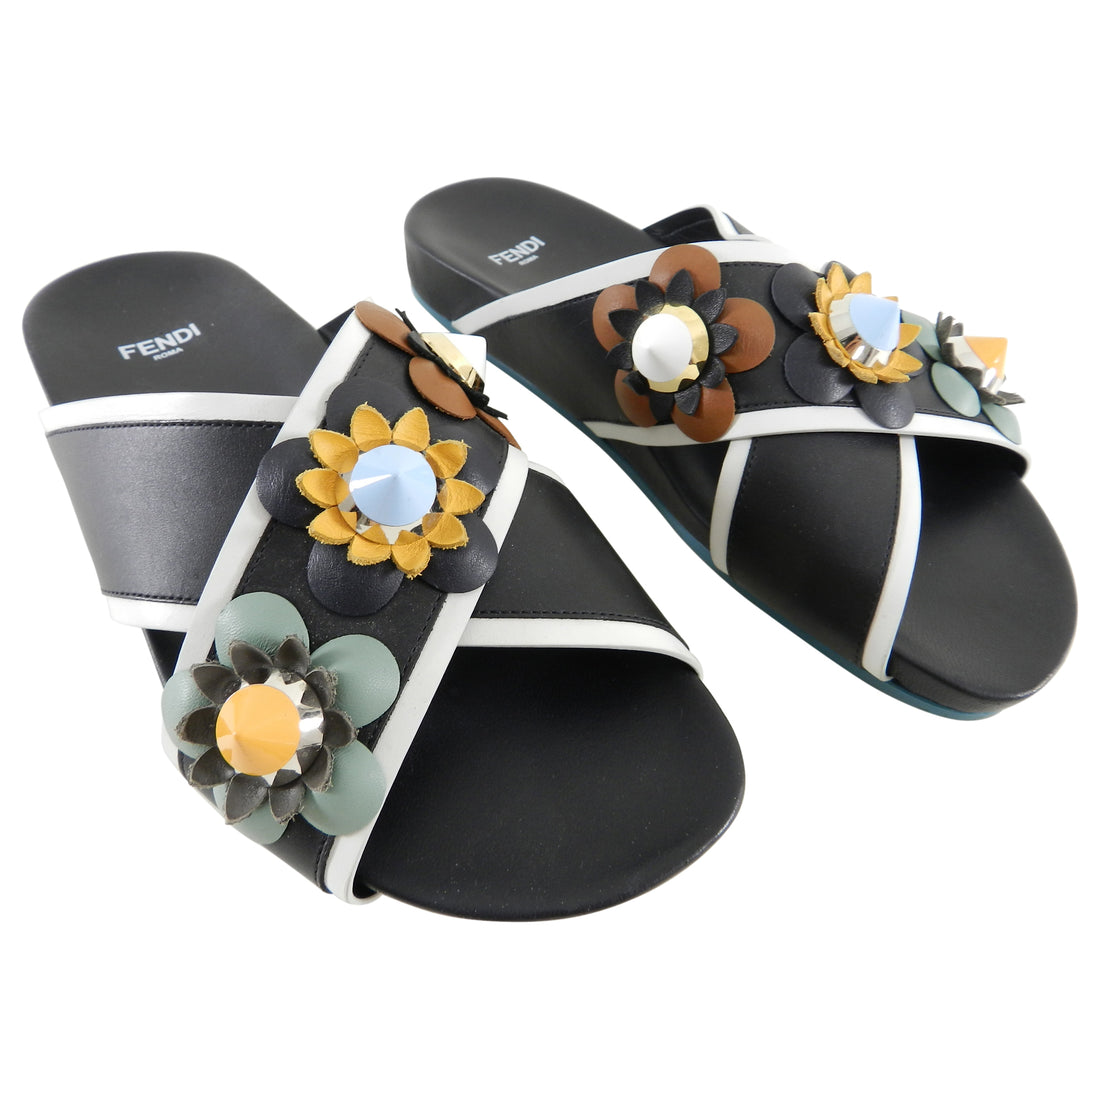 Fendi Flowerland Black Multi Slip On Flower Stud Sandals - USA 6.5